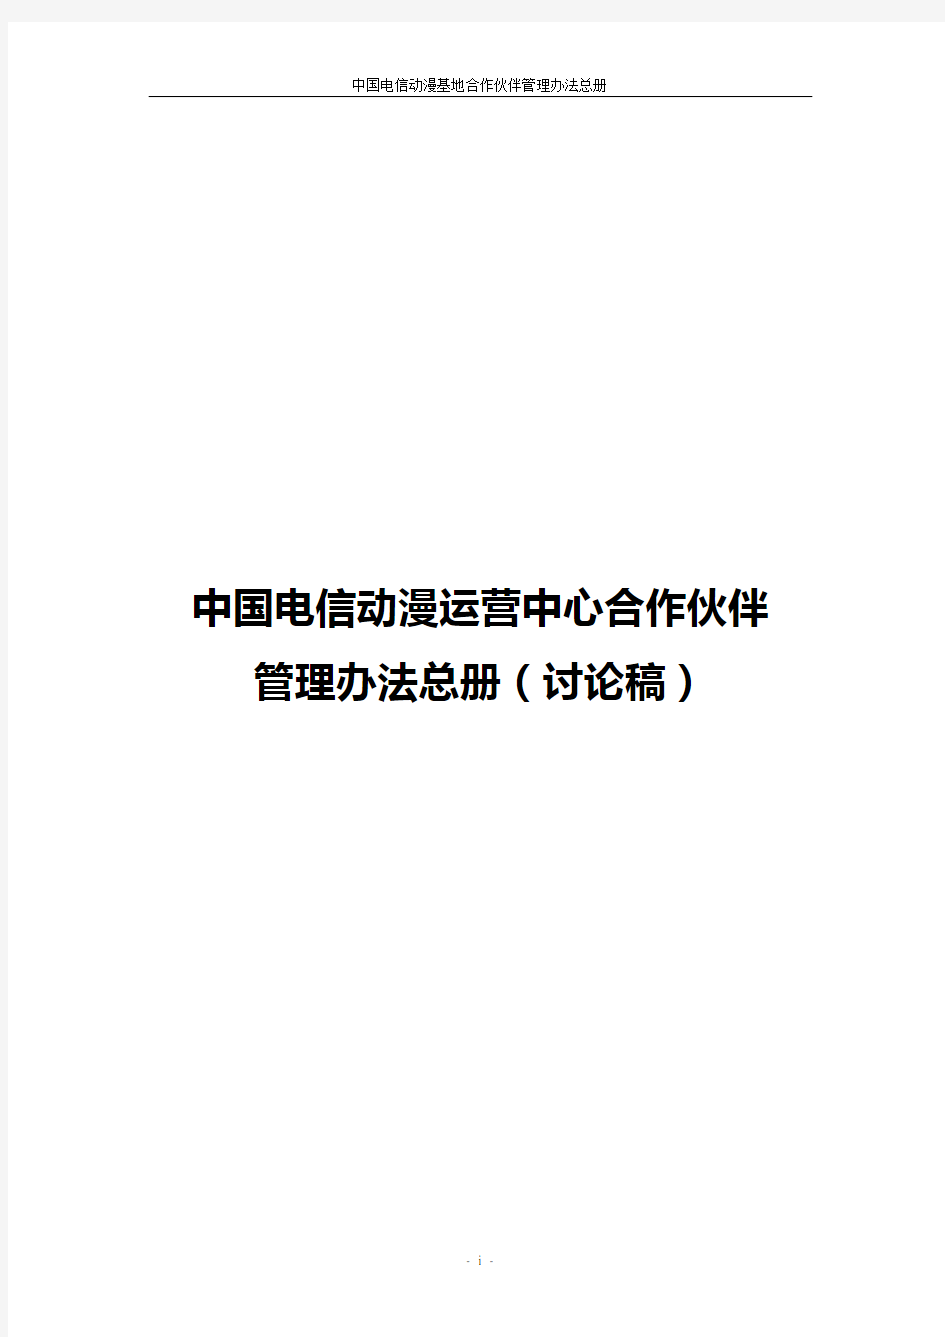 中国电信动漫运营中心合作伙伴管理办法总册